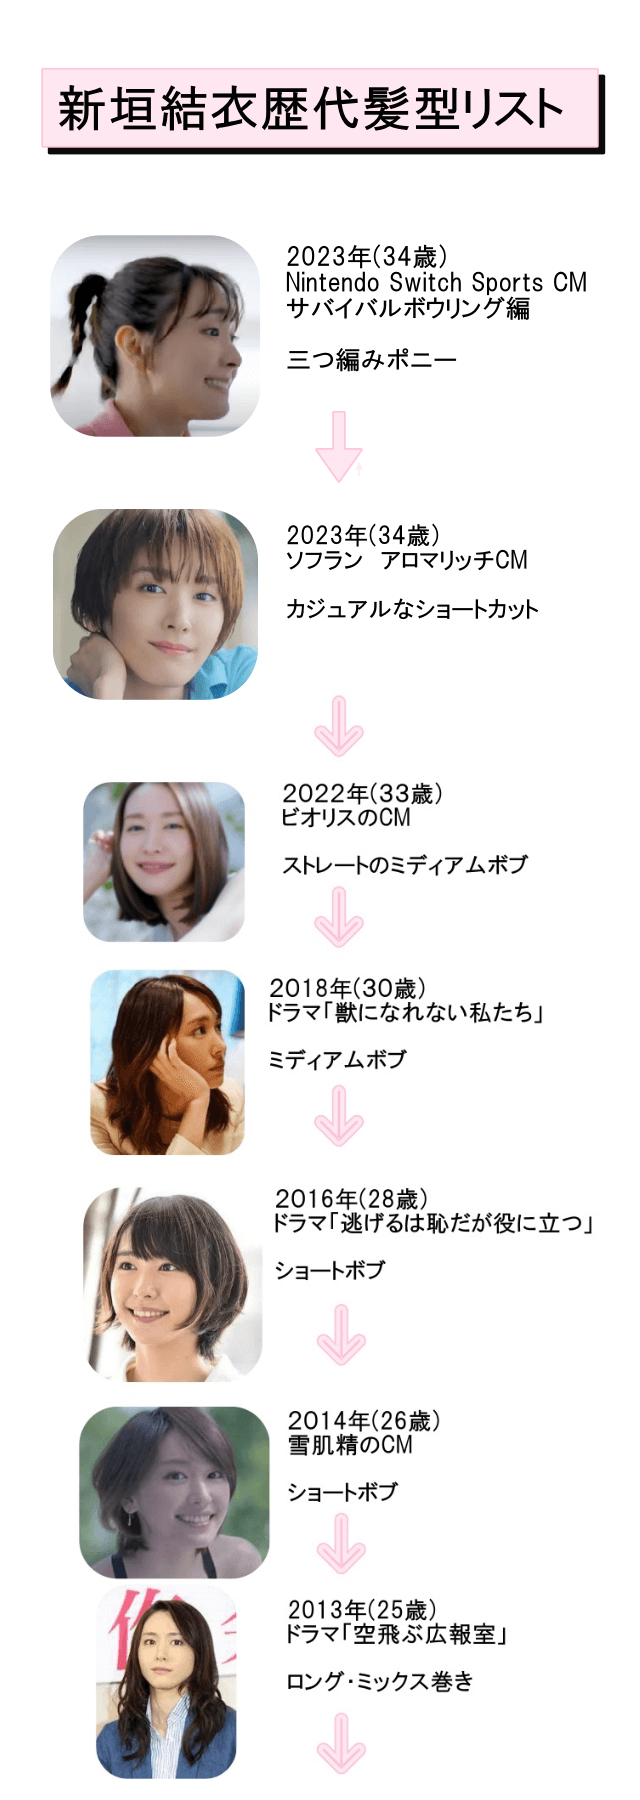 新垣結衣の髪型リスト2013年(25歳)～2023年(34歳)